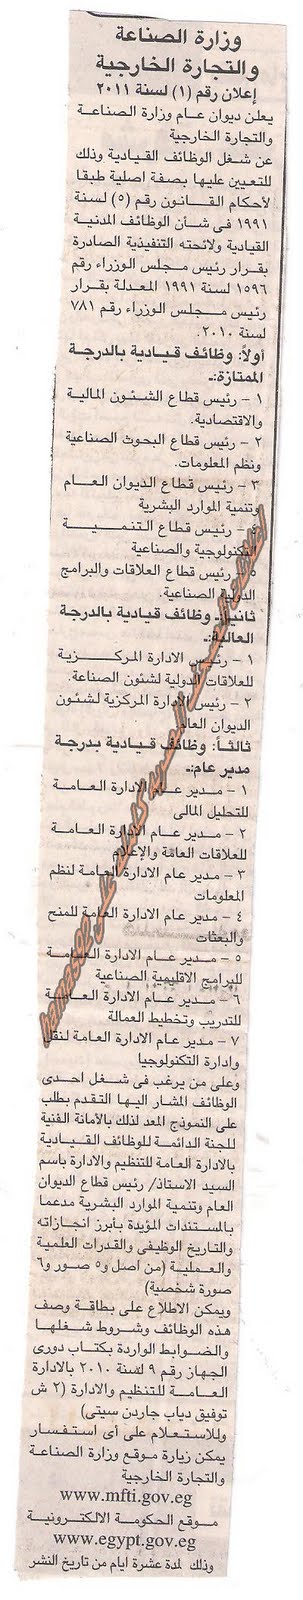 وظائف خالية من جريدة الجمهورية الخميس 11/8/2011 Picture+003